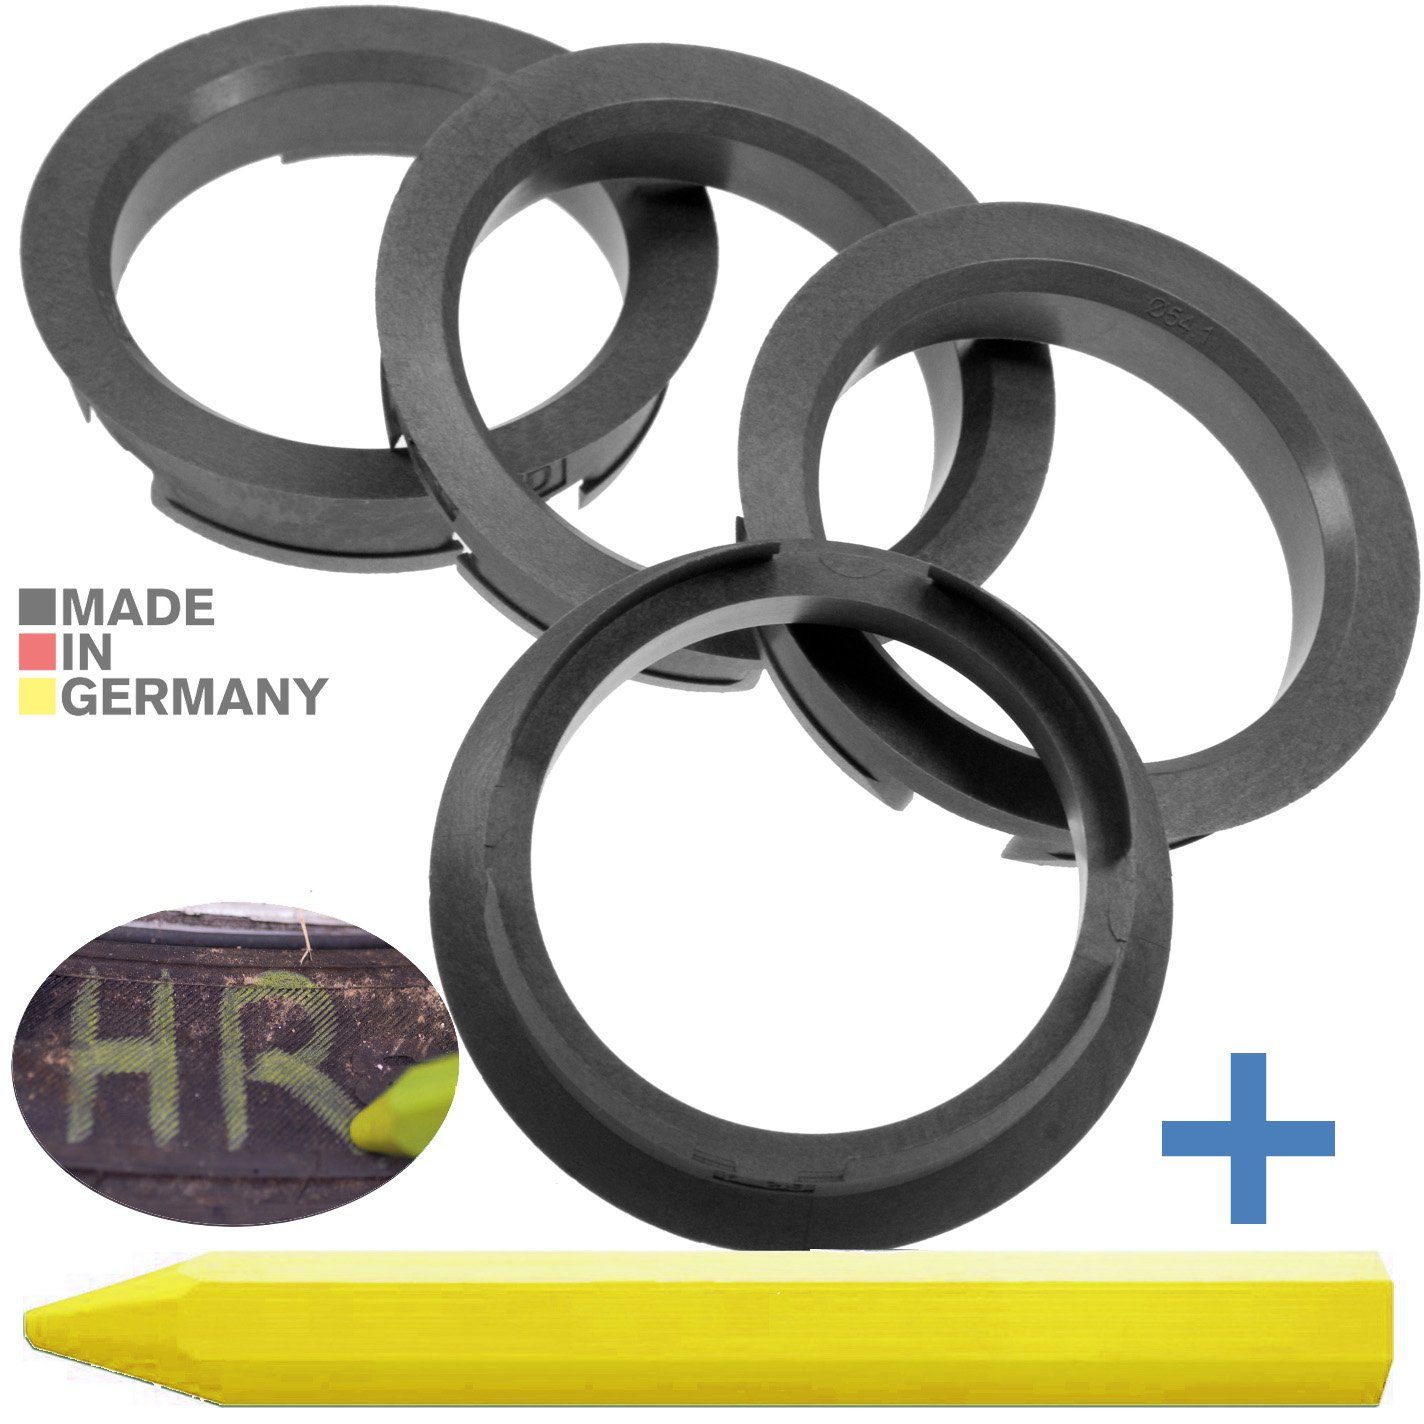 RKC Reifenstift 4X Silber + Ringe Fett mm Kreide x Reifen 54,1 1x Stift, Maße: 63,4 Felgen Zentrierringe